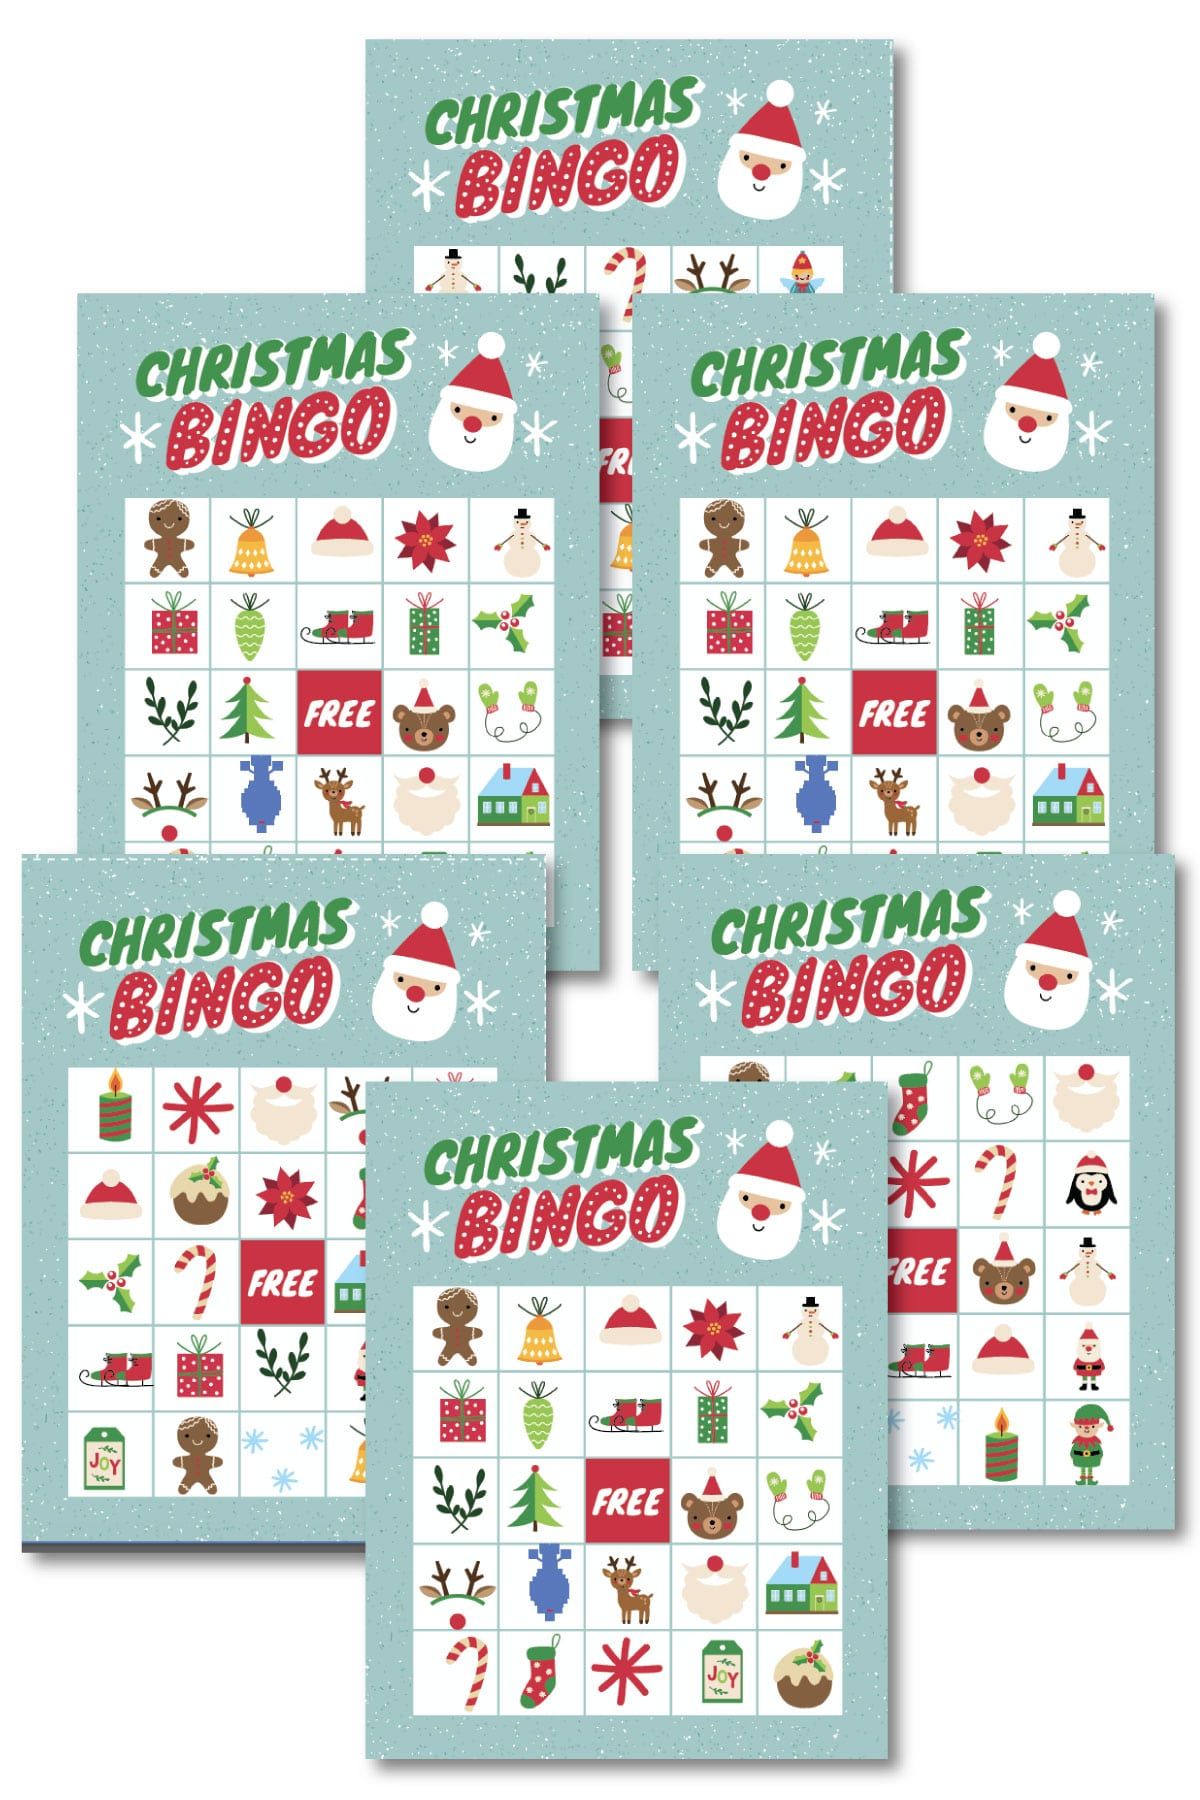 Χριστουγεννιάτικες κάρτες bingo σε έναν σωρό